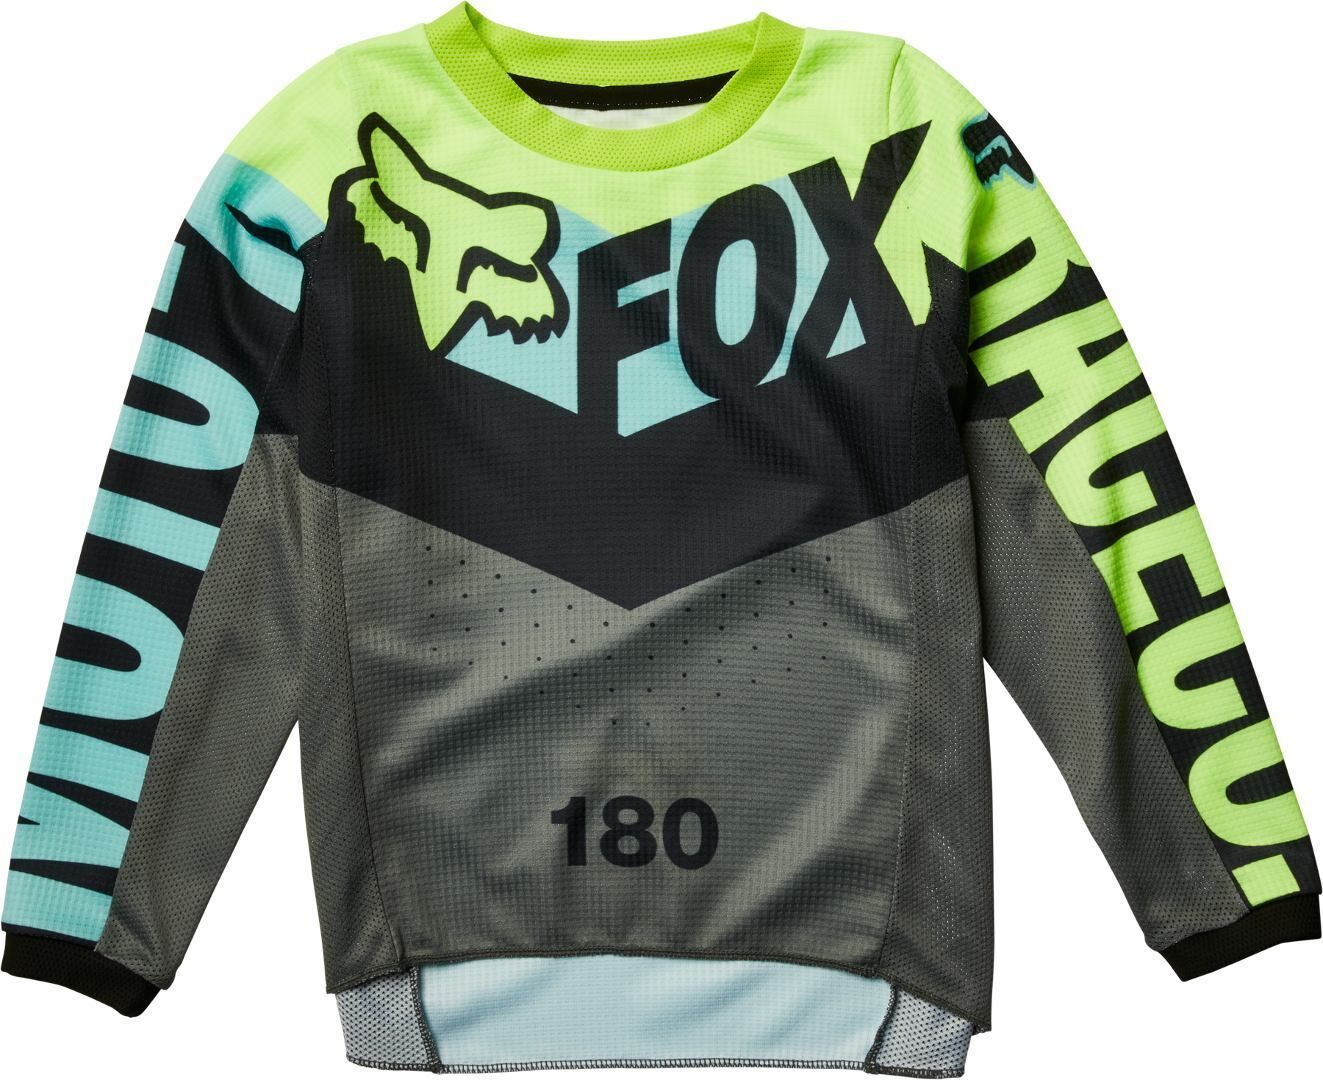 FOX 180 Trice Crianças Motocross Jersey